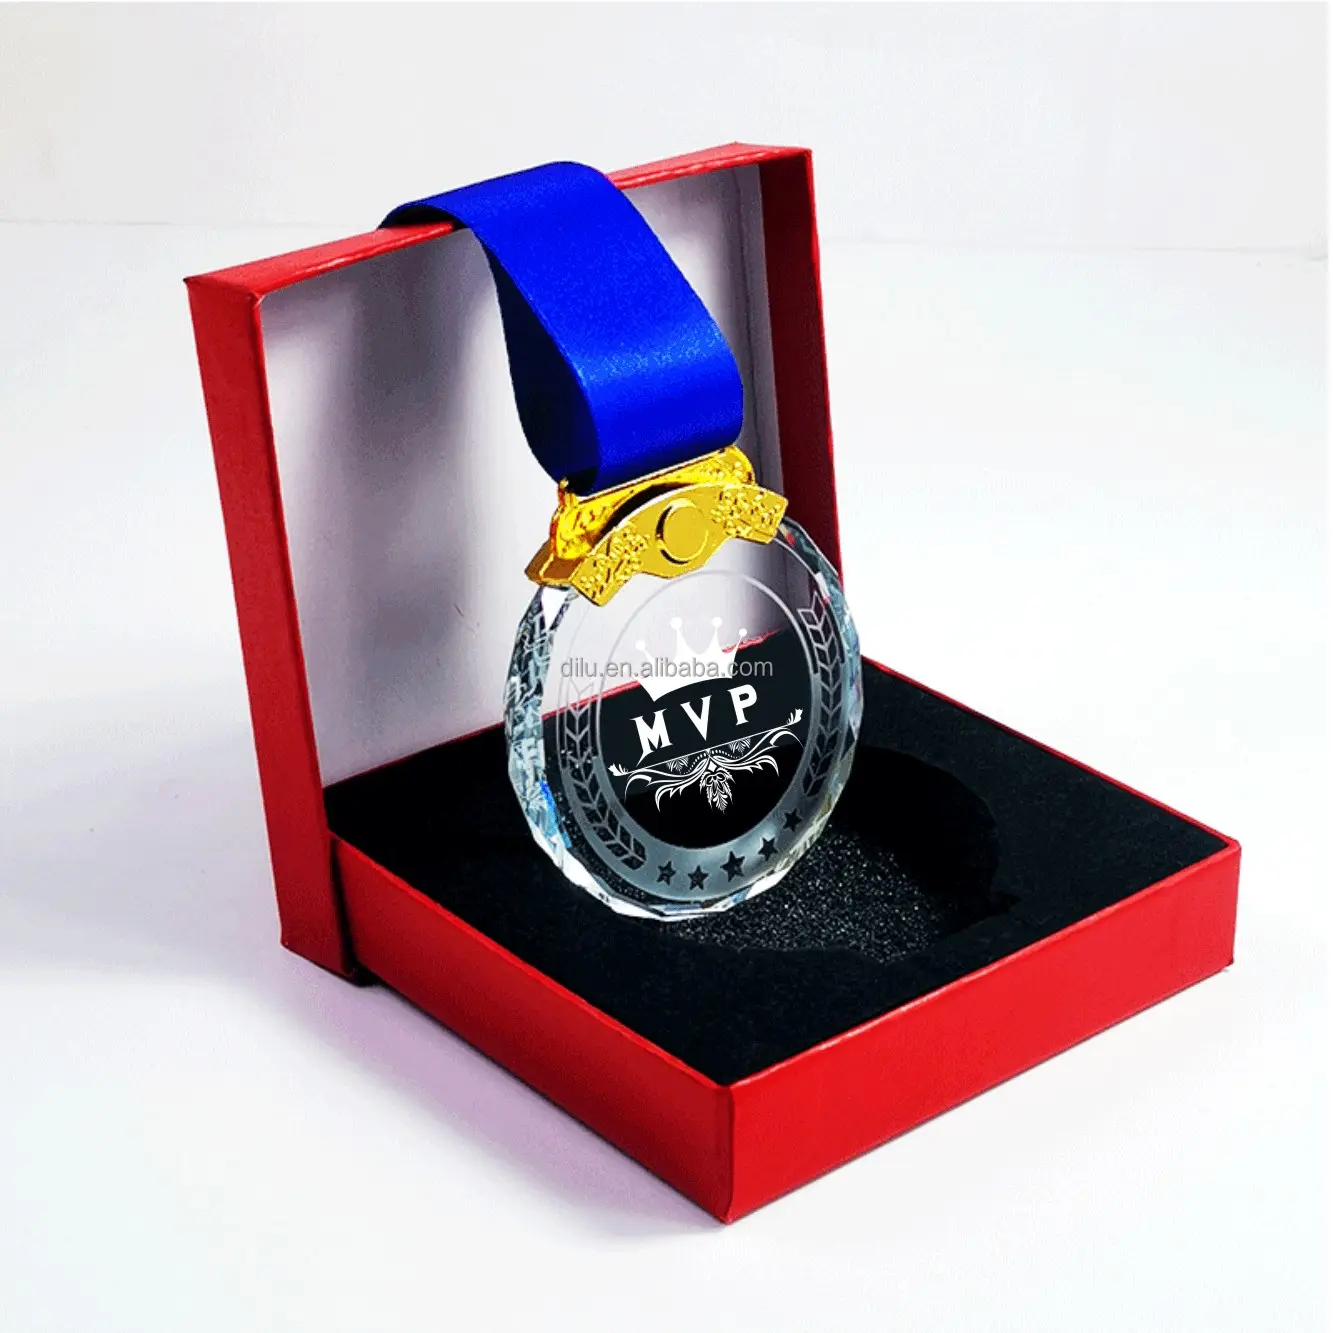 Medaglie premio di cristallo MVP FMVP migliorato artista prezioso giocatore campione di bronzo premio souvenir trofeo sportivo oro argento